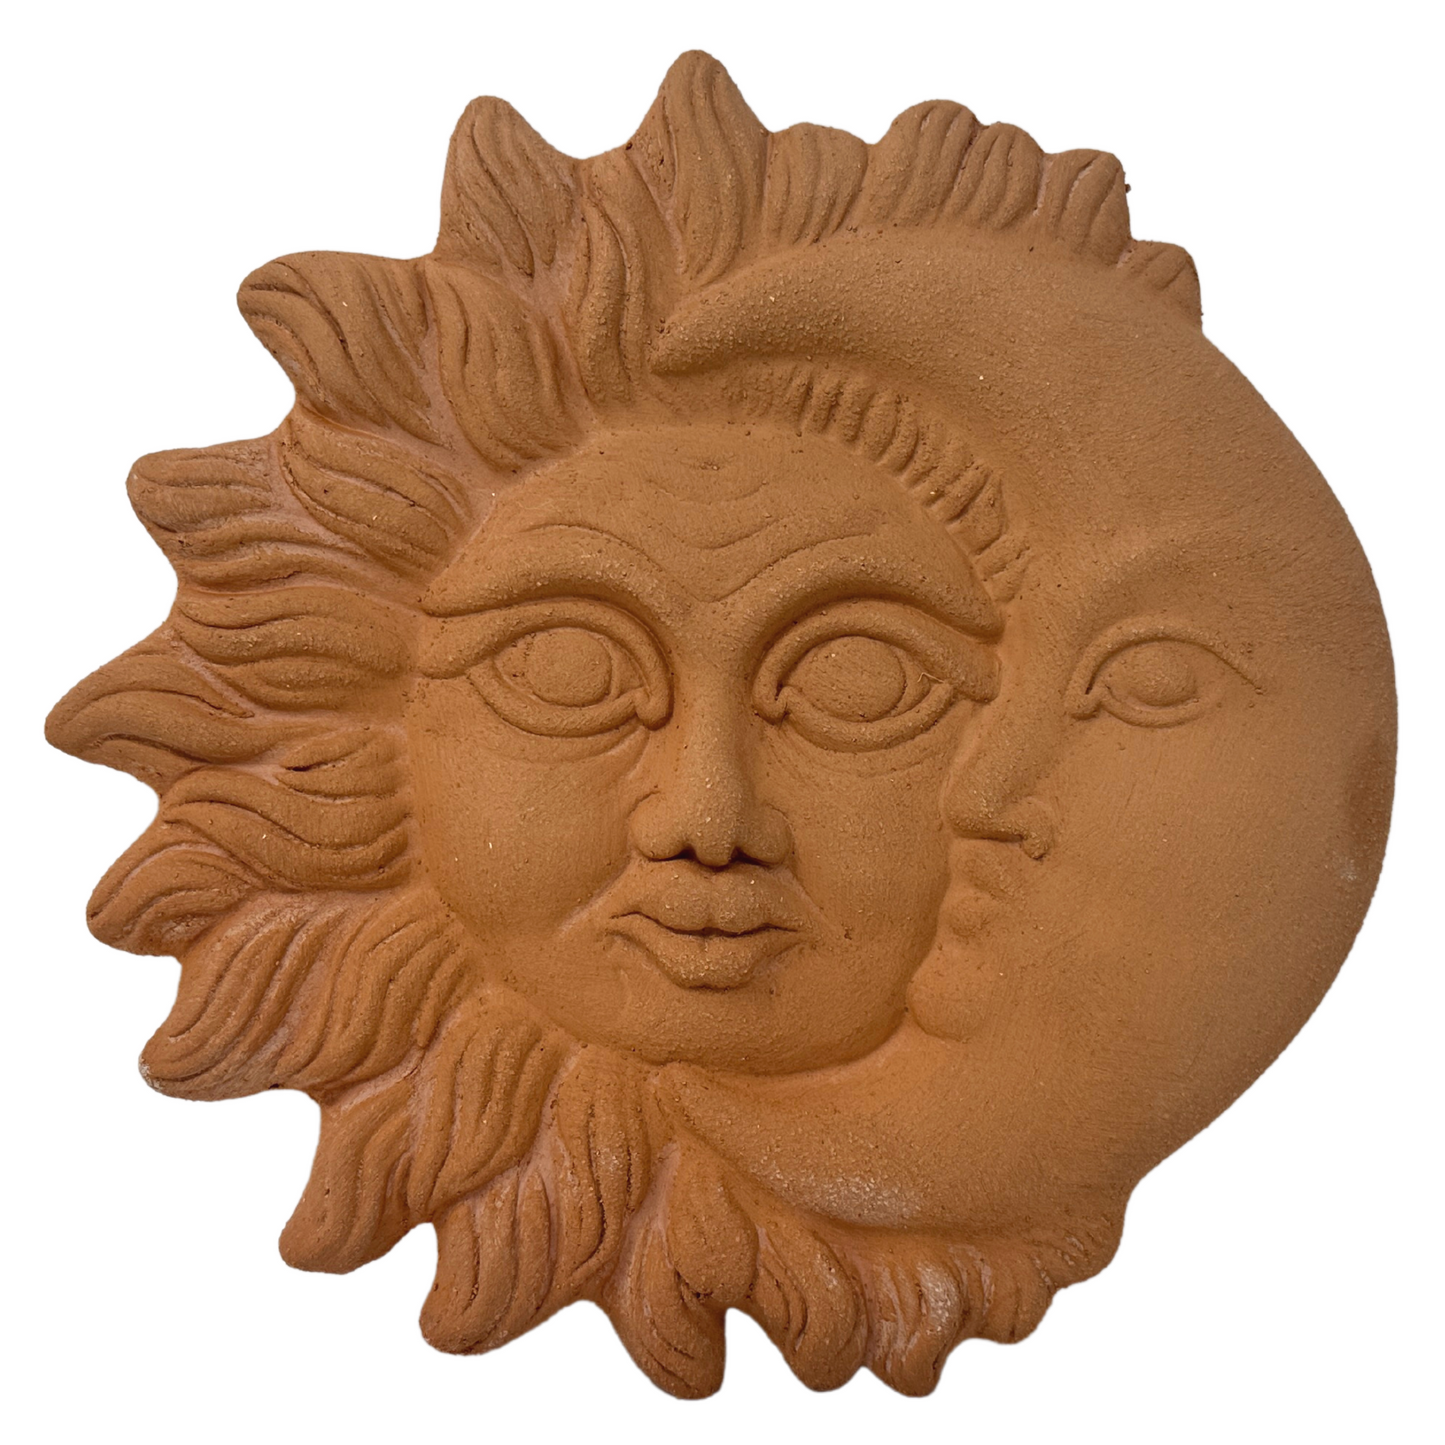 Sole e Luna in ceramica artigianale da parete per arredo e decorazione casa Terracotta Idea Regalo